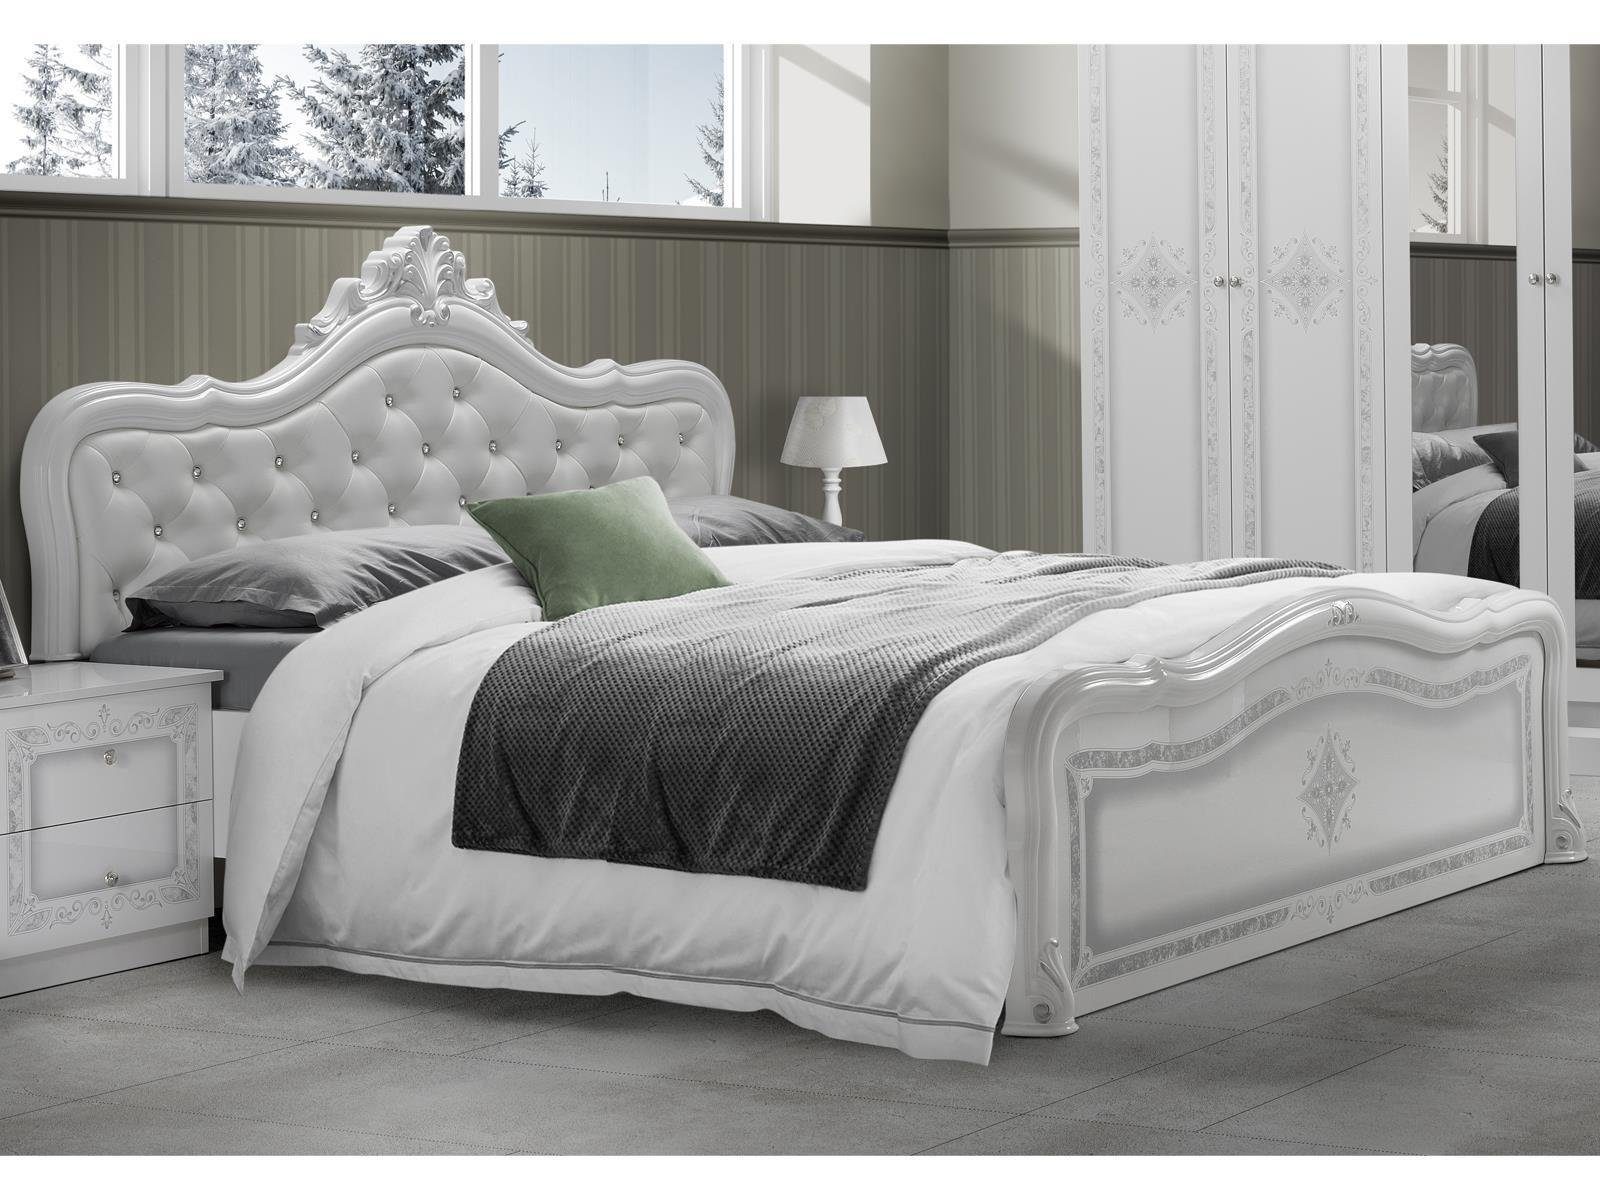 Bett Chesterfield gepolstert Barockstil, Bett Farbe leinen Landhaus, Maße  200 x 160 cm